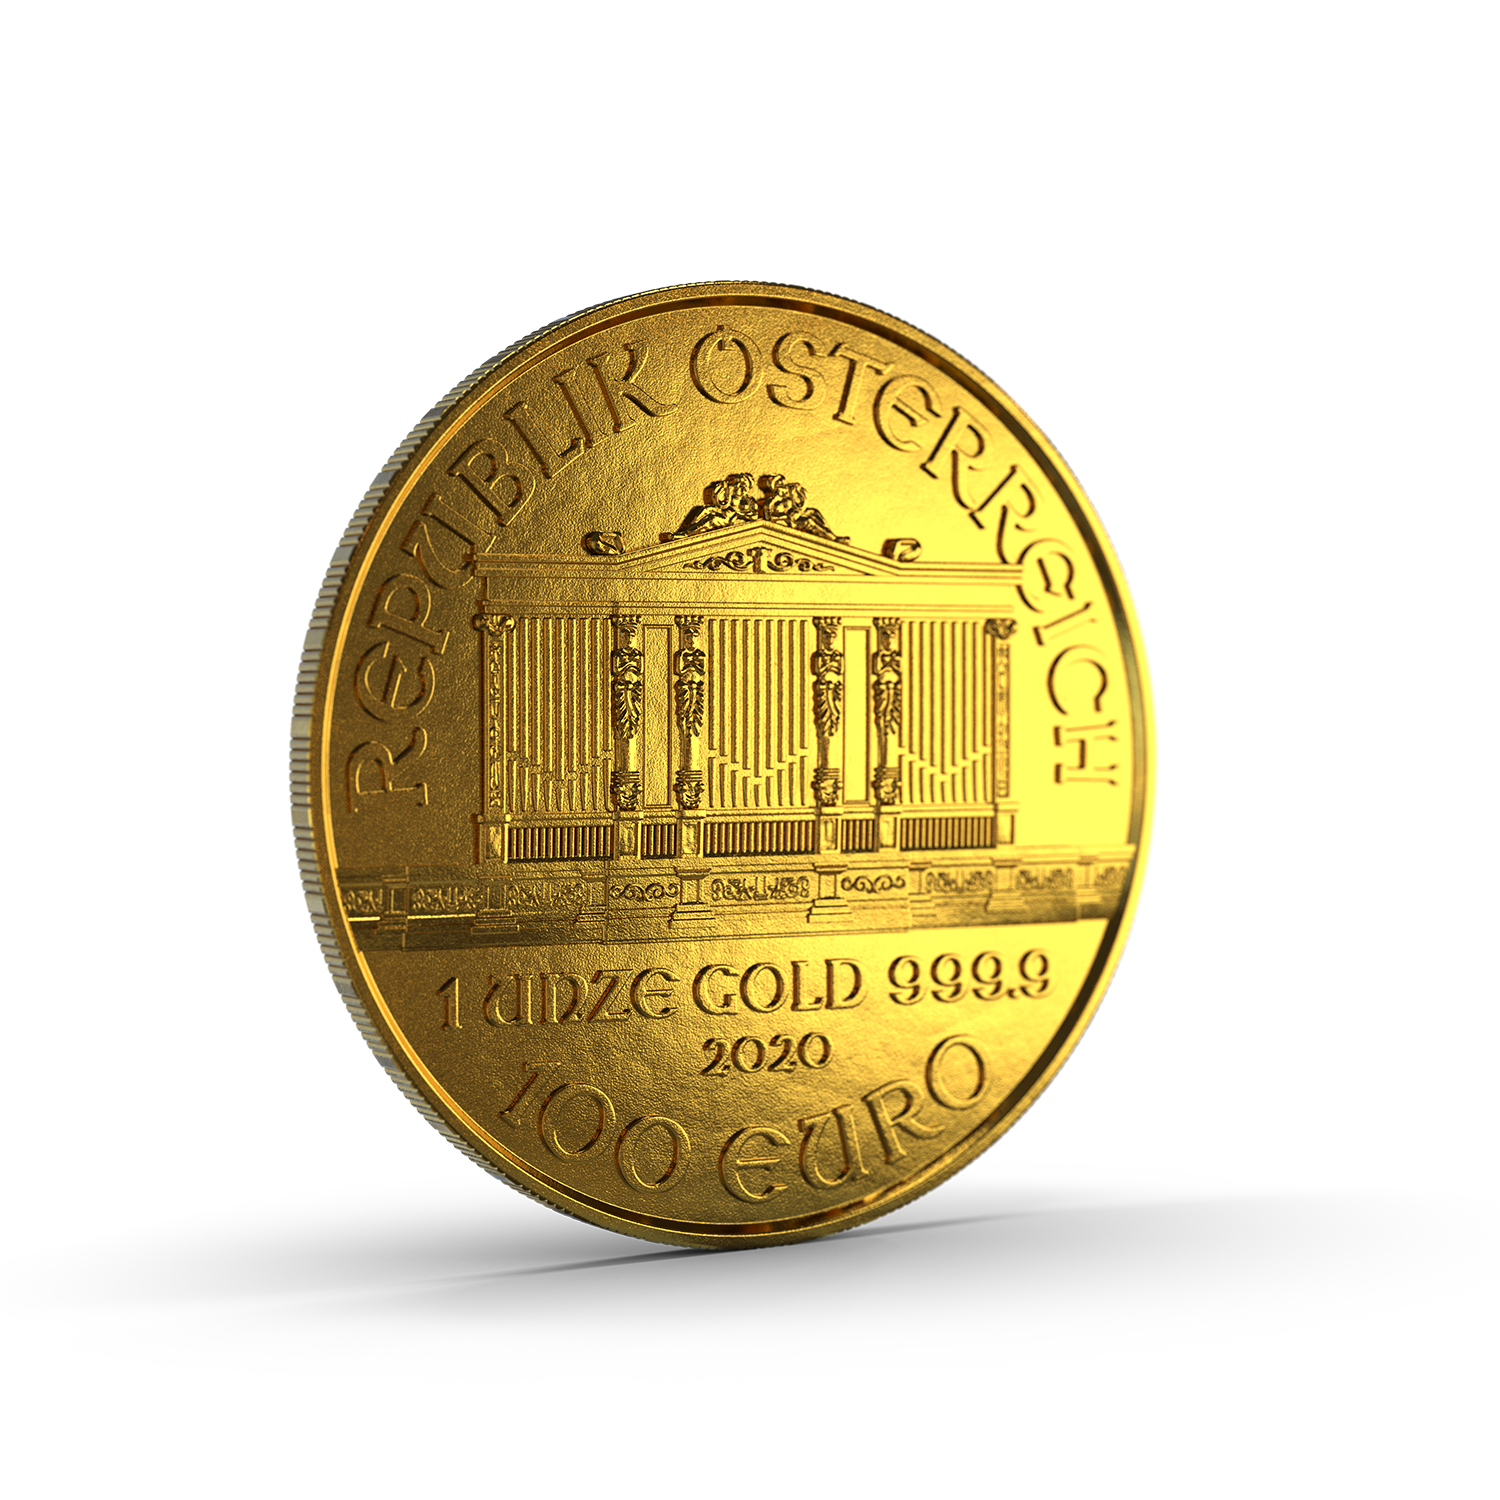 Die einzige europäische Goldanlagemünze mit Nennwert in Euro.